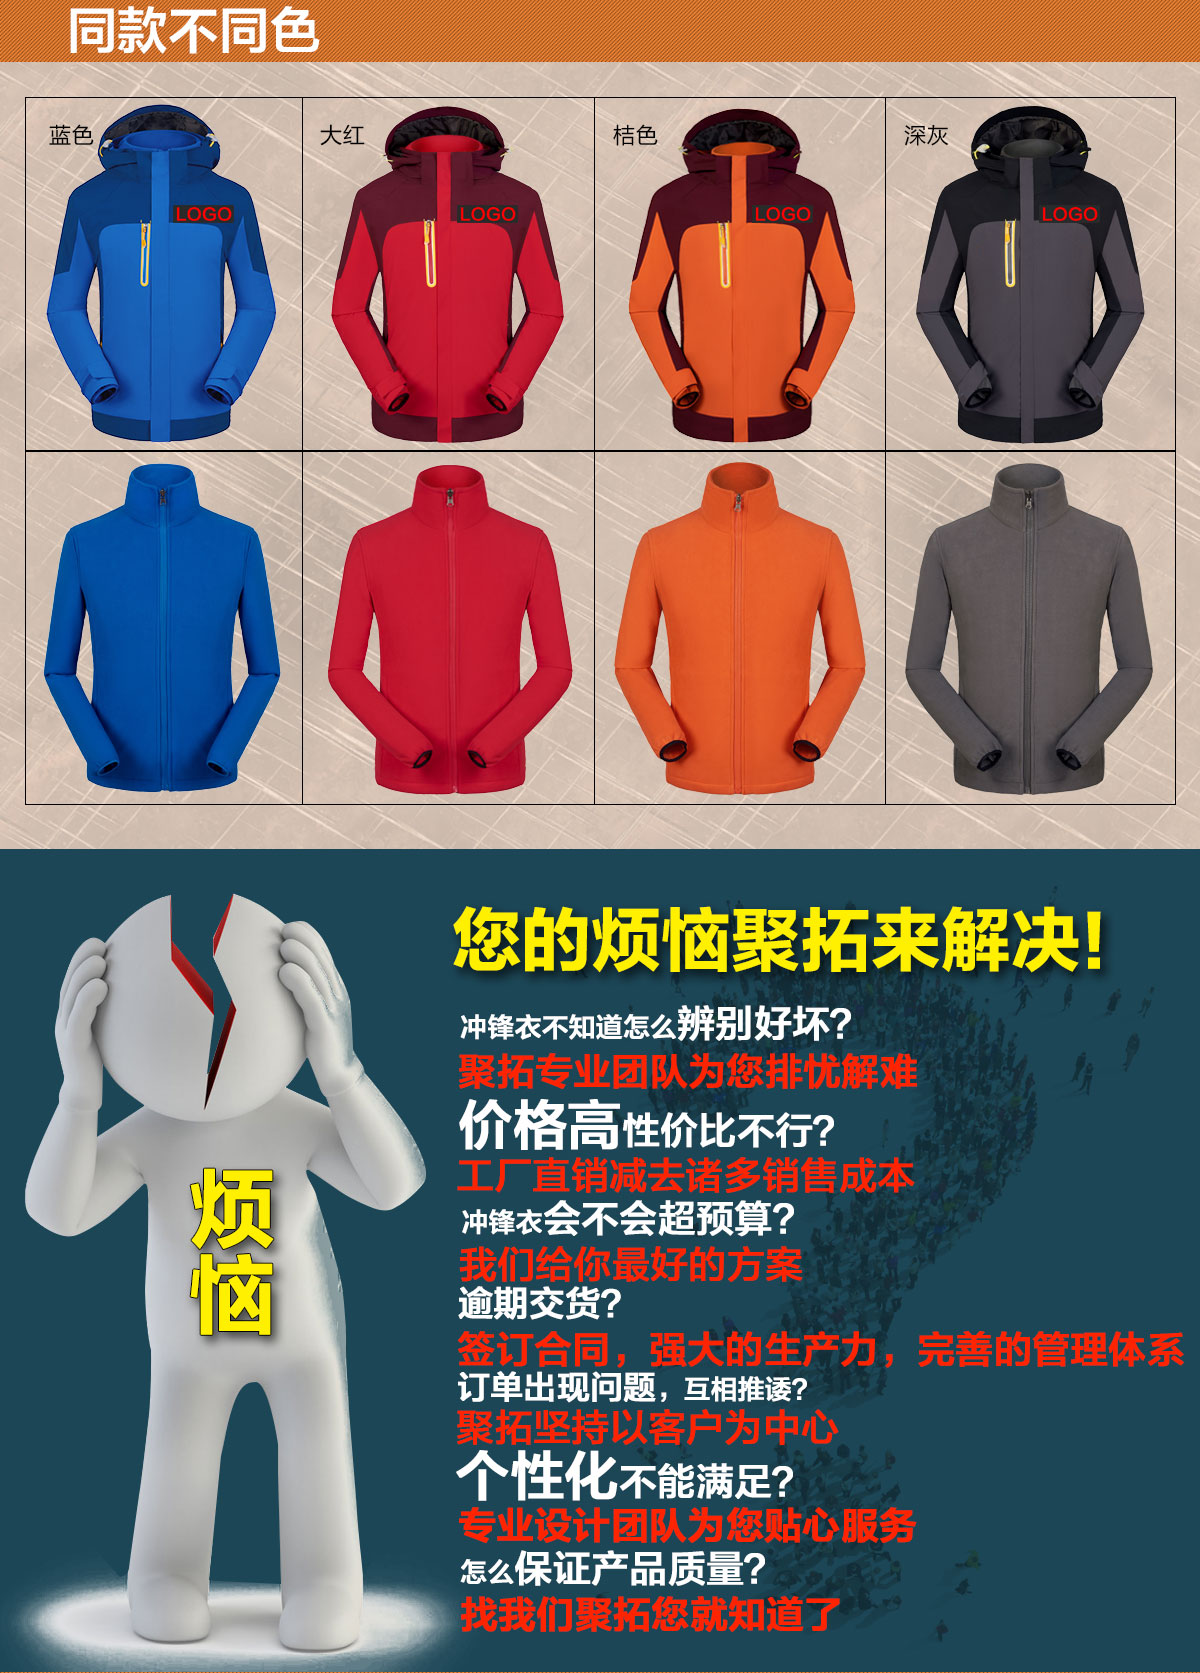 不同颜色的冬季冲锋衣，鹰诺达为您提供高性价比冬季冲锋衣